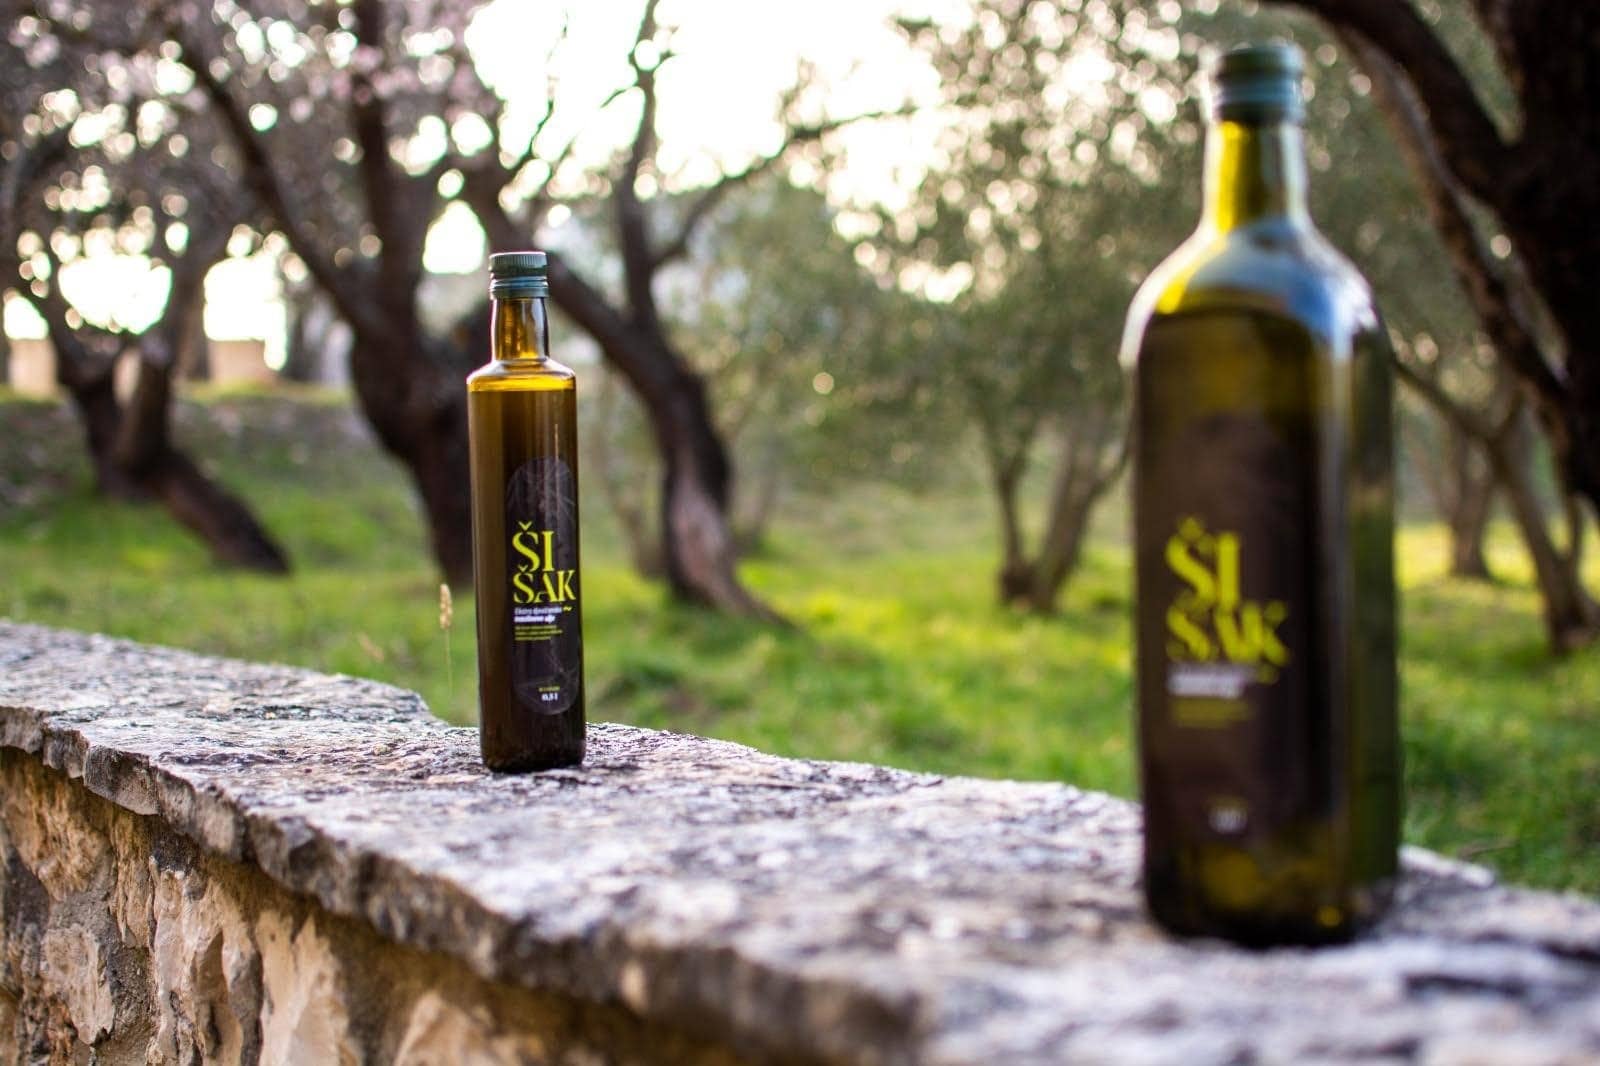 europe-profiles-the-best-olive-masles-competitions-выигравший-награждение-производитель-возвратился-в-родовые-рощи-для-продолжения-семейной-традиции-времени-оливкового-масла